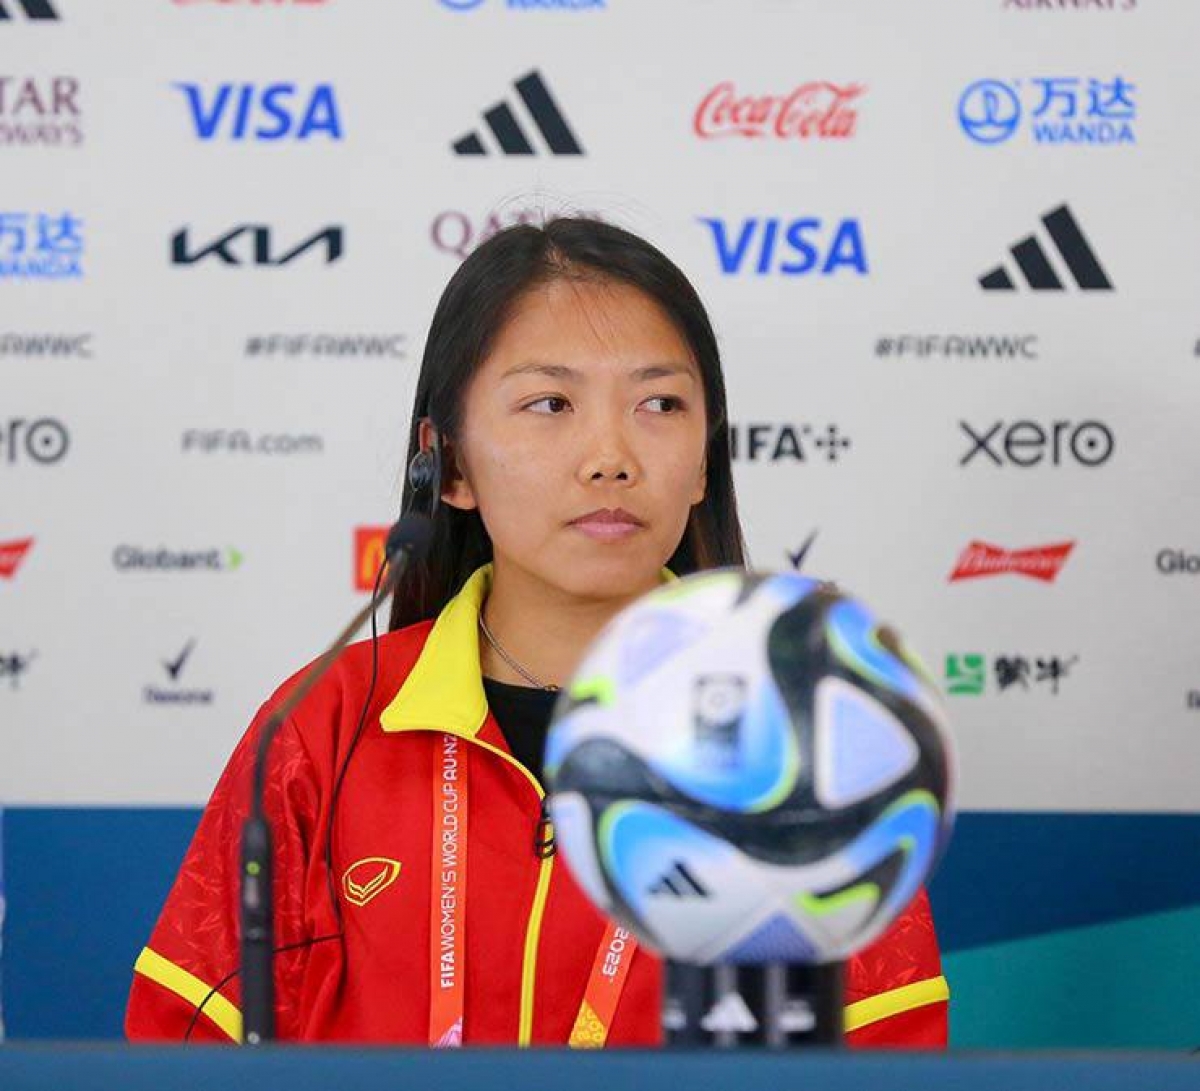 Huỳnh Như khẳng định: "Mỗi trận đấu là chiến hết mình để mang hình ảnh bóng đá nữ Việt Nam đến với người hâm mộ trên toàn thế giới".